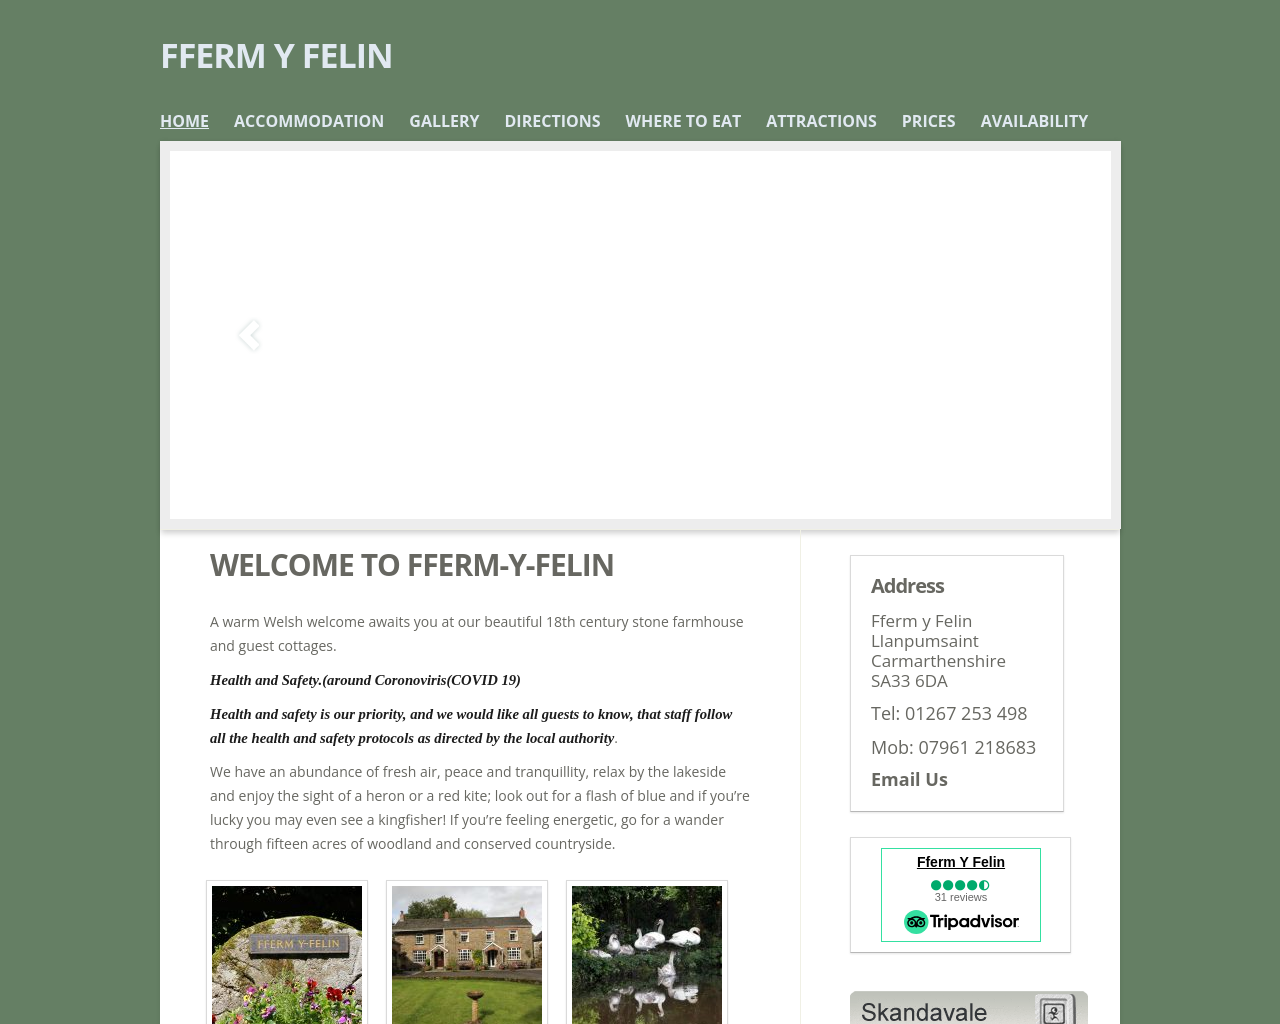 ffermyfelin.com